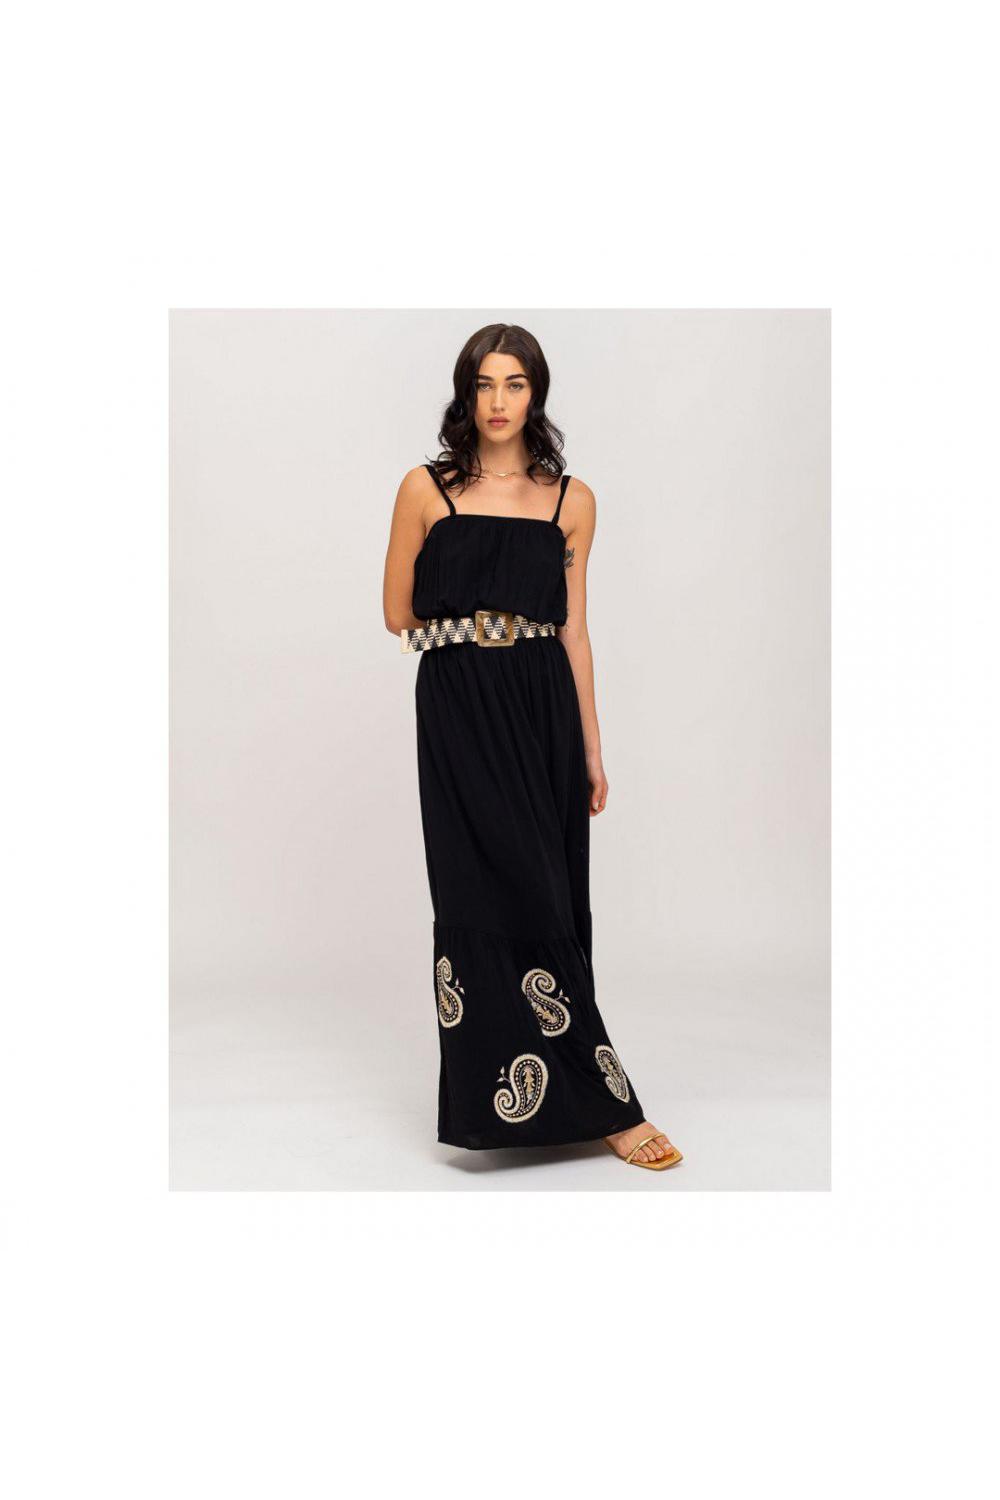 STAFF Dress Gabriella Women - Black (67-020.047-N0000)